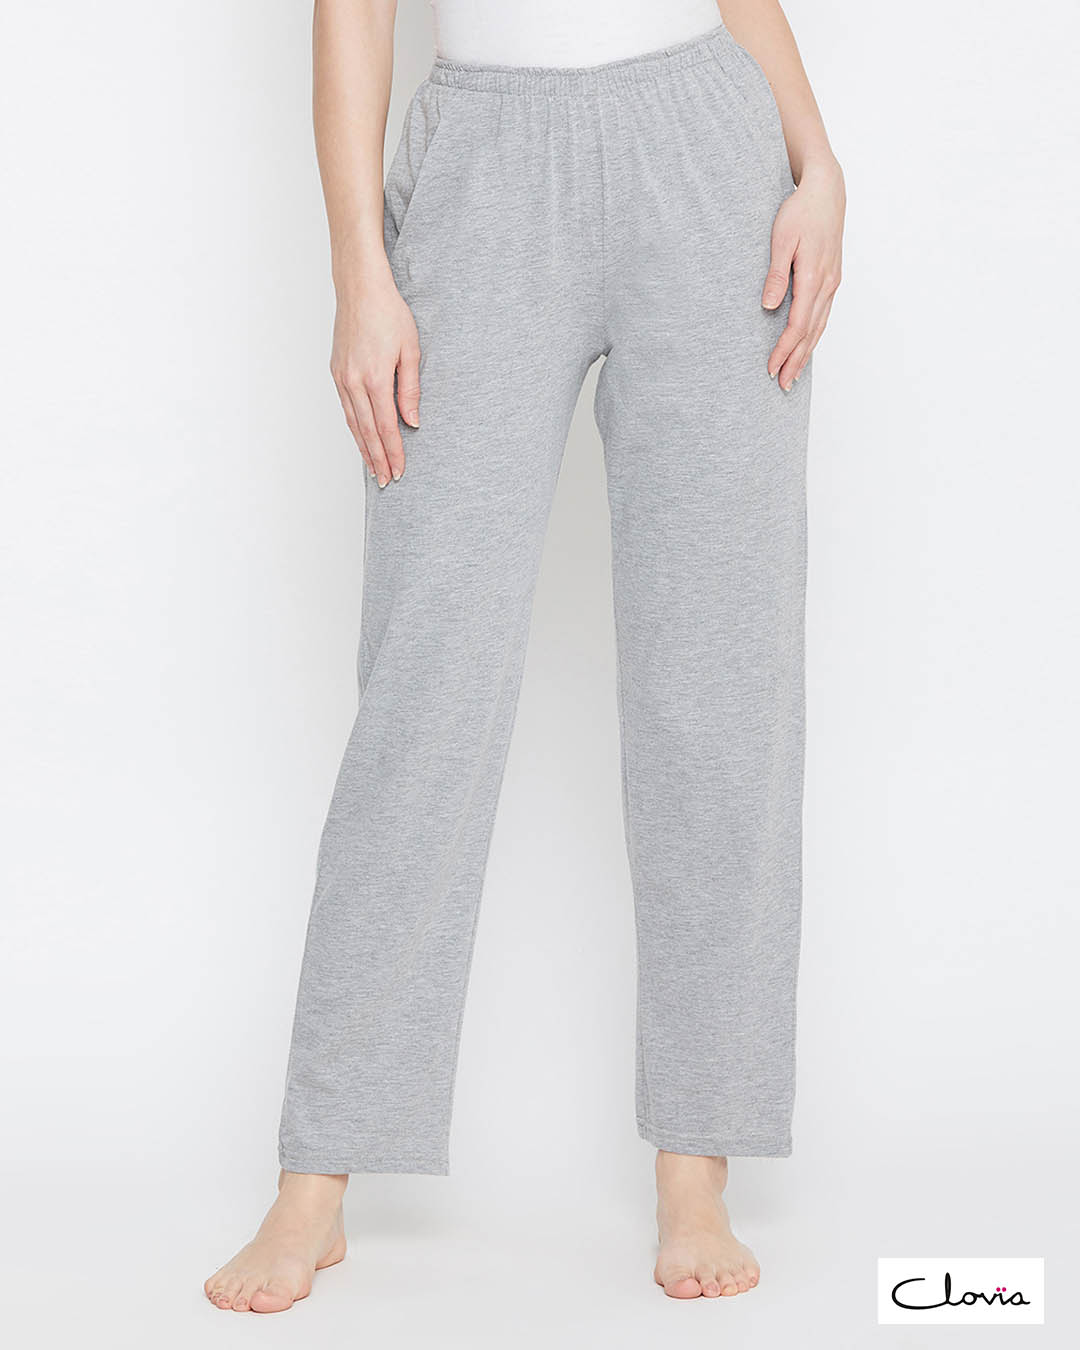 Clovia Pyjama with Elastic Waistband in Grey - Cotton Rich